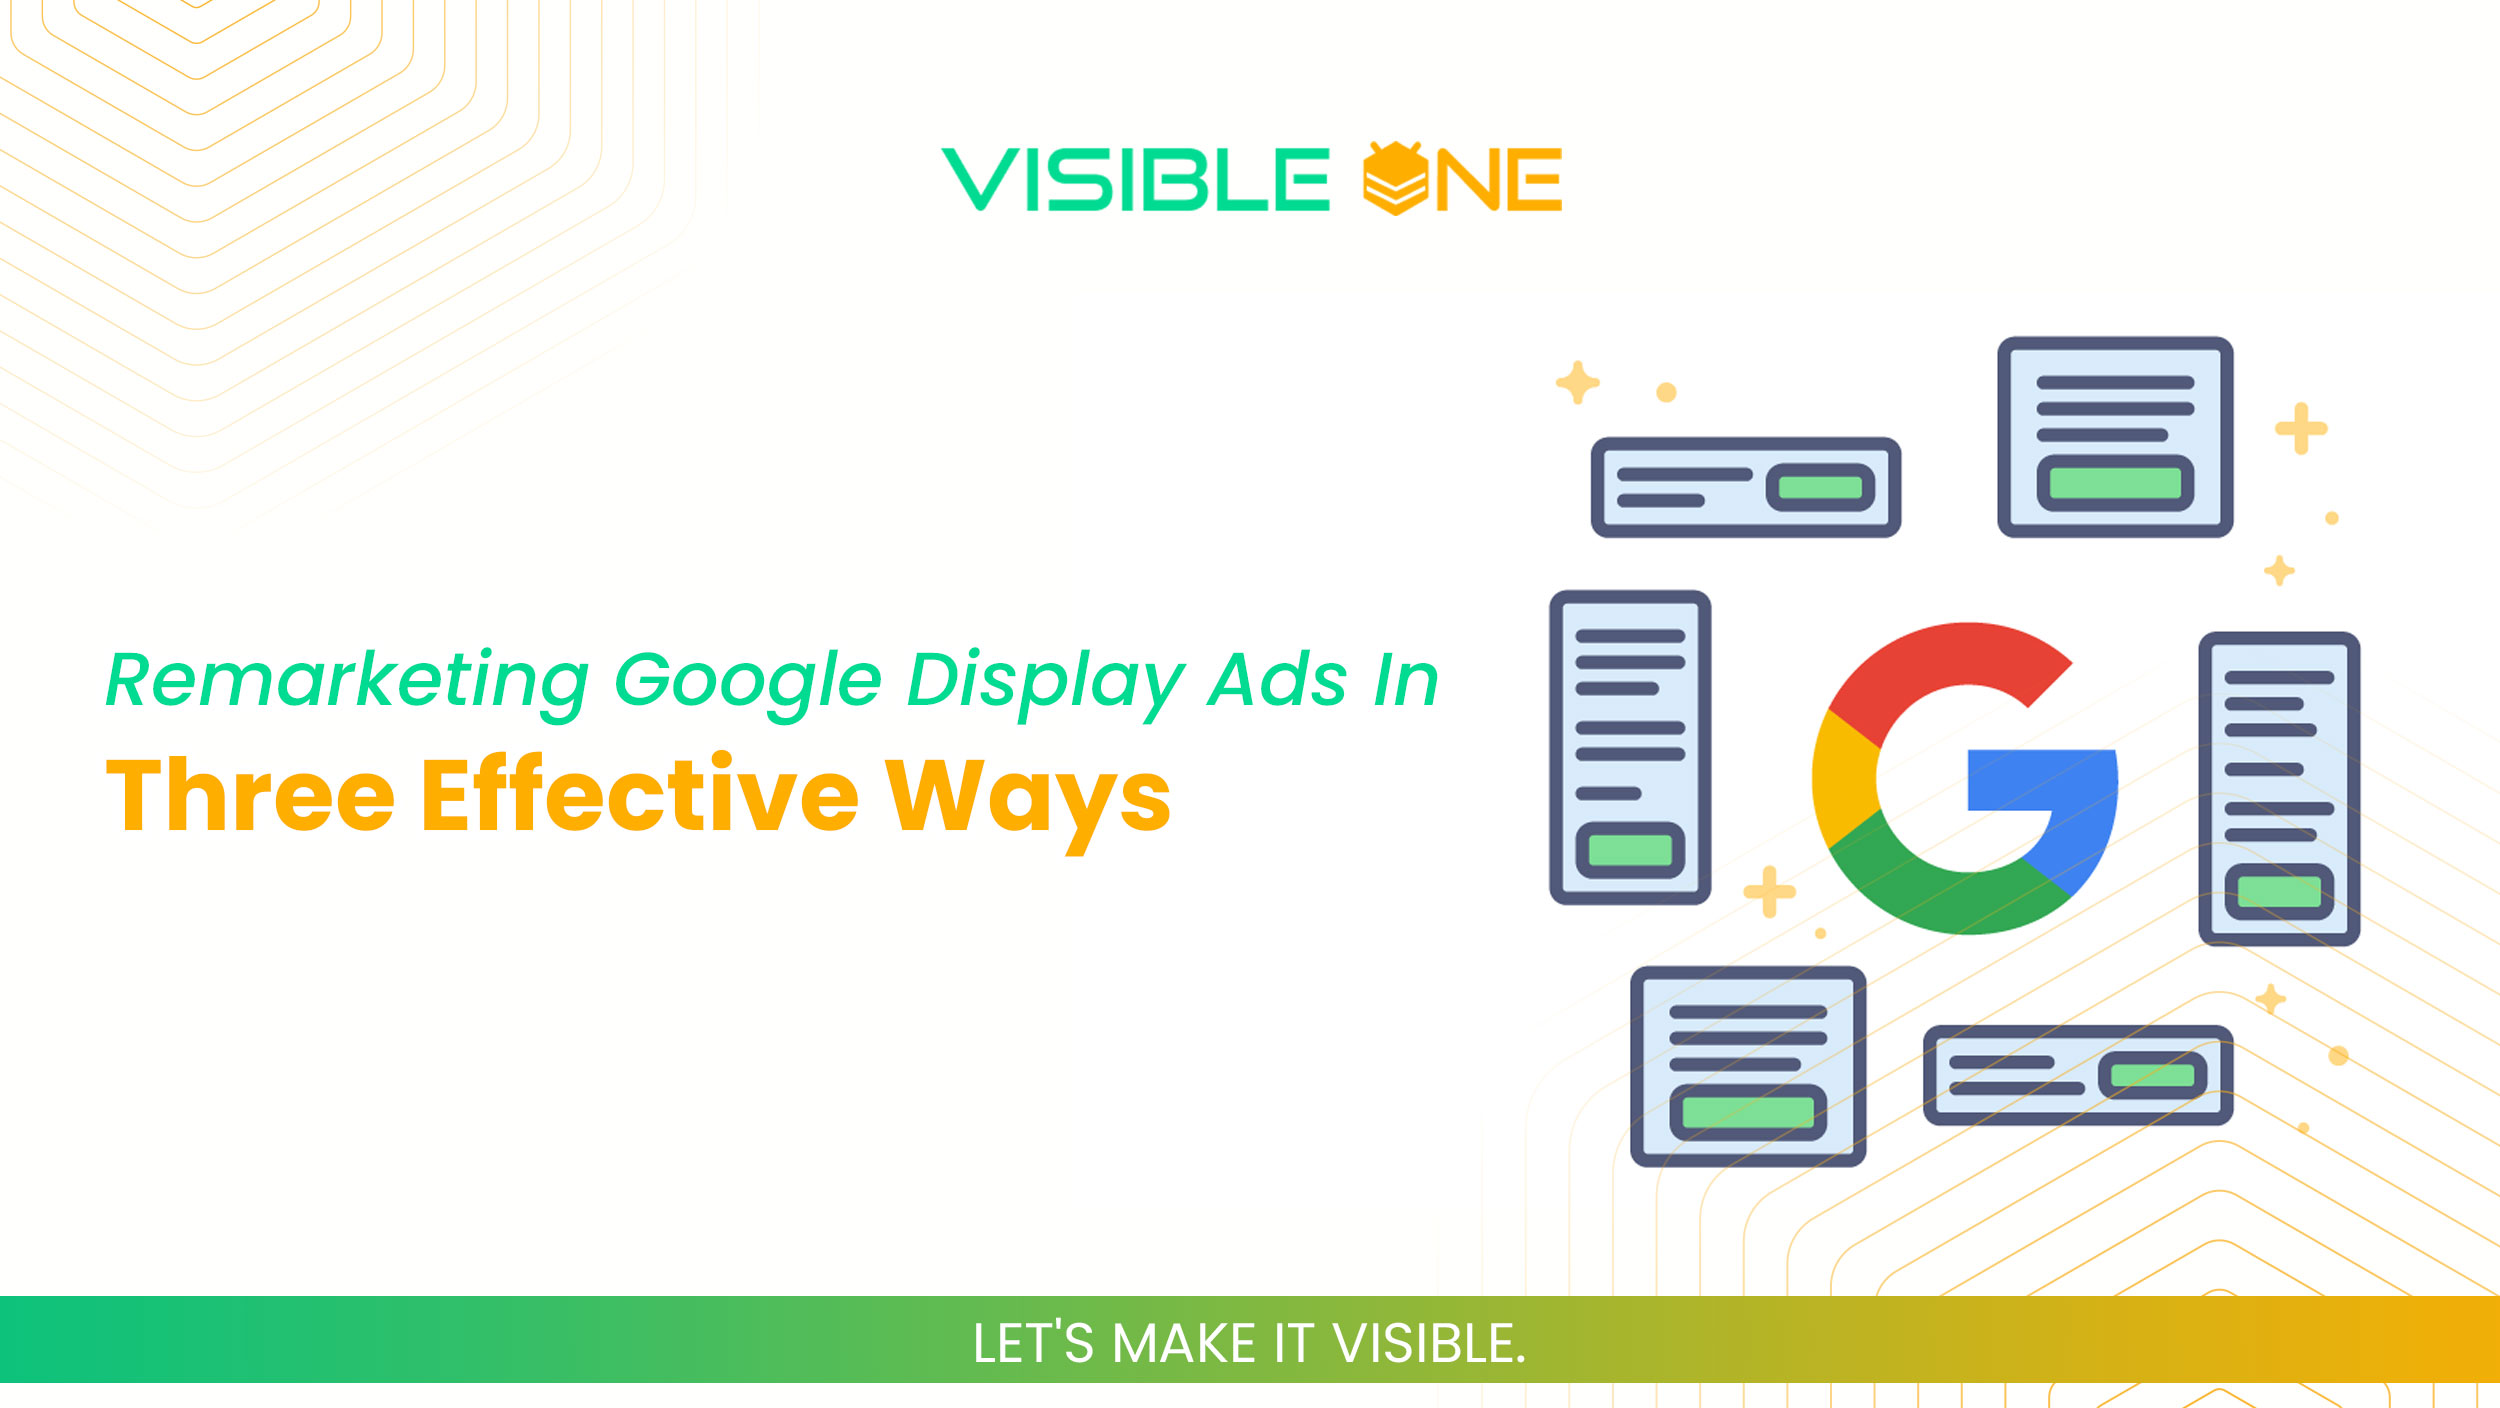 Remarketing Google Display Ads in Three Effective Ways